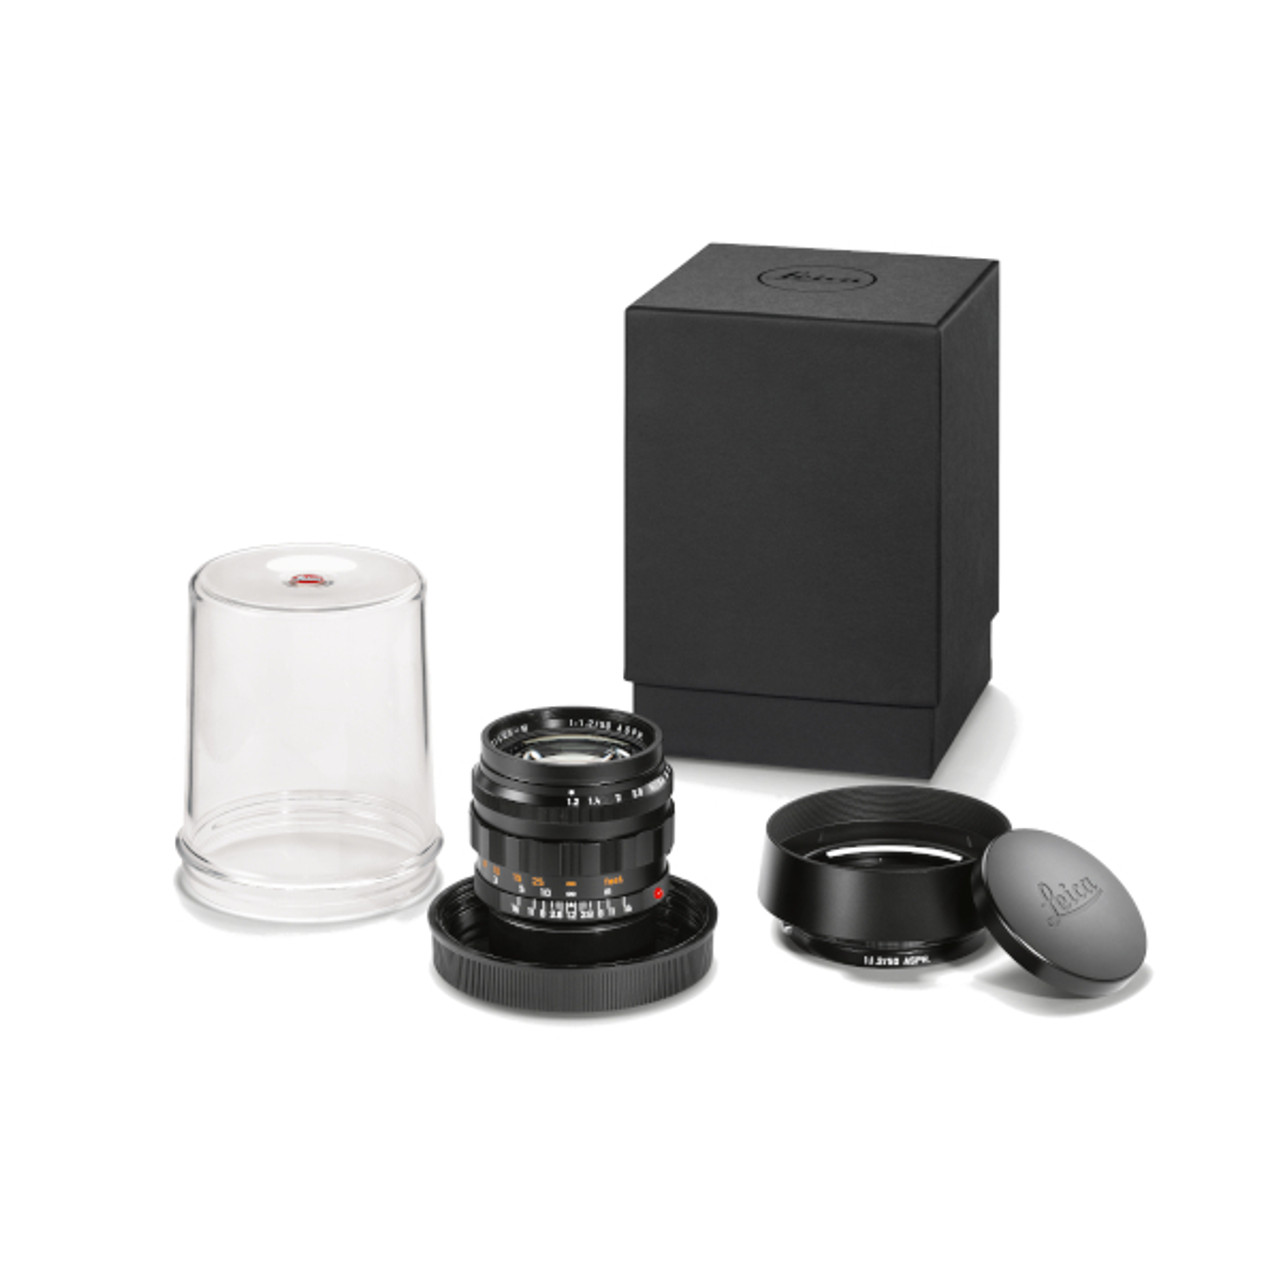 Leica Noctilux-M 50 f/1.2 ASPH Black